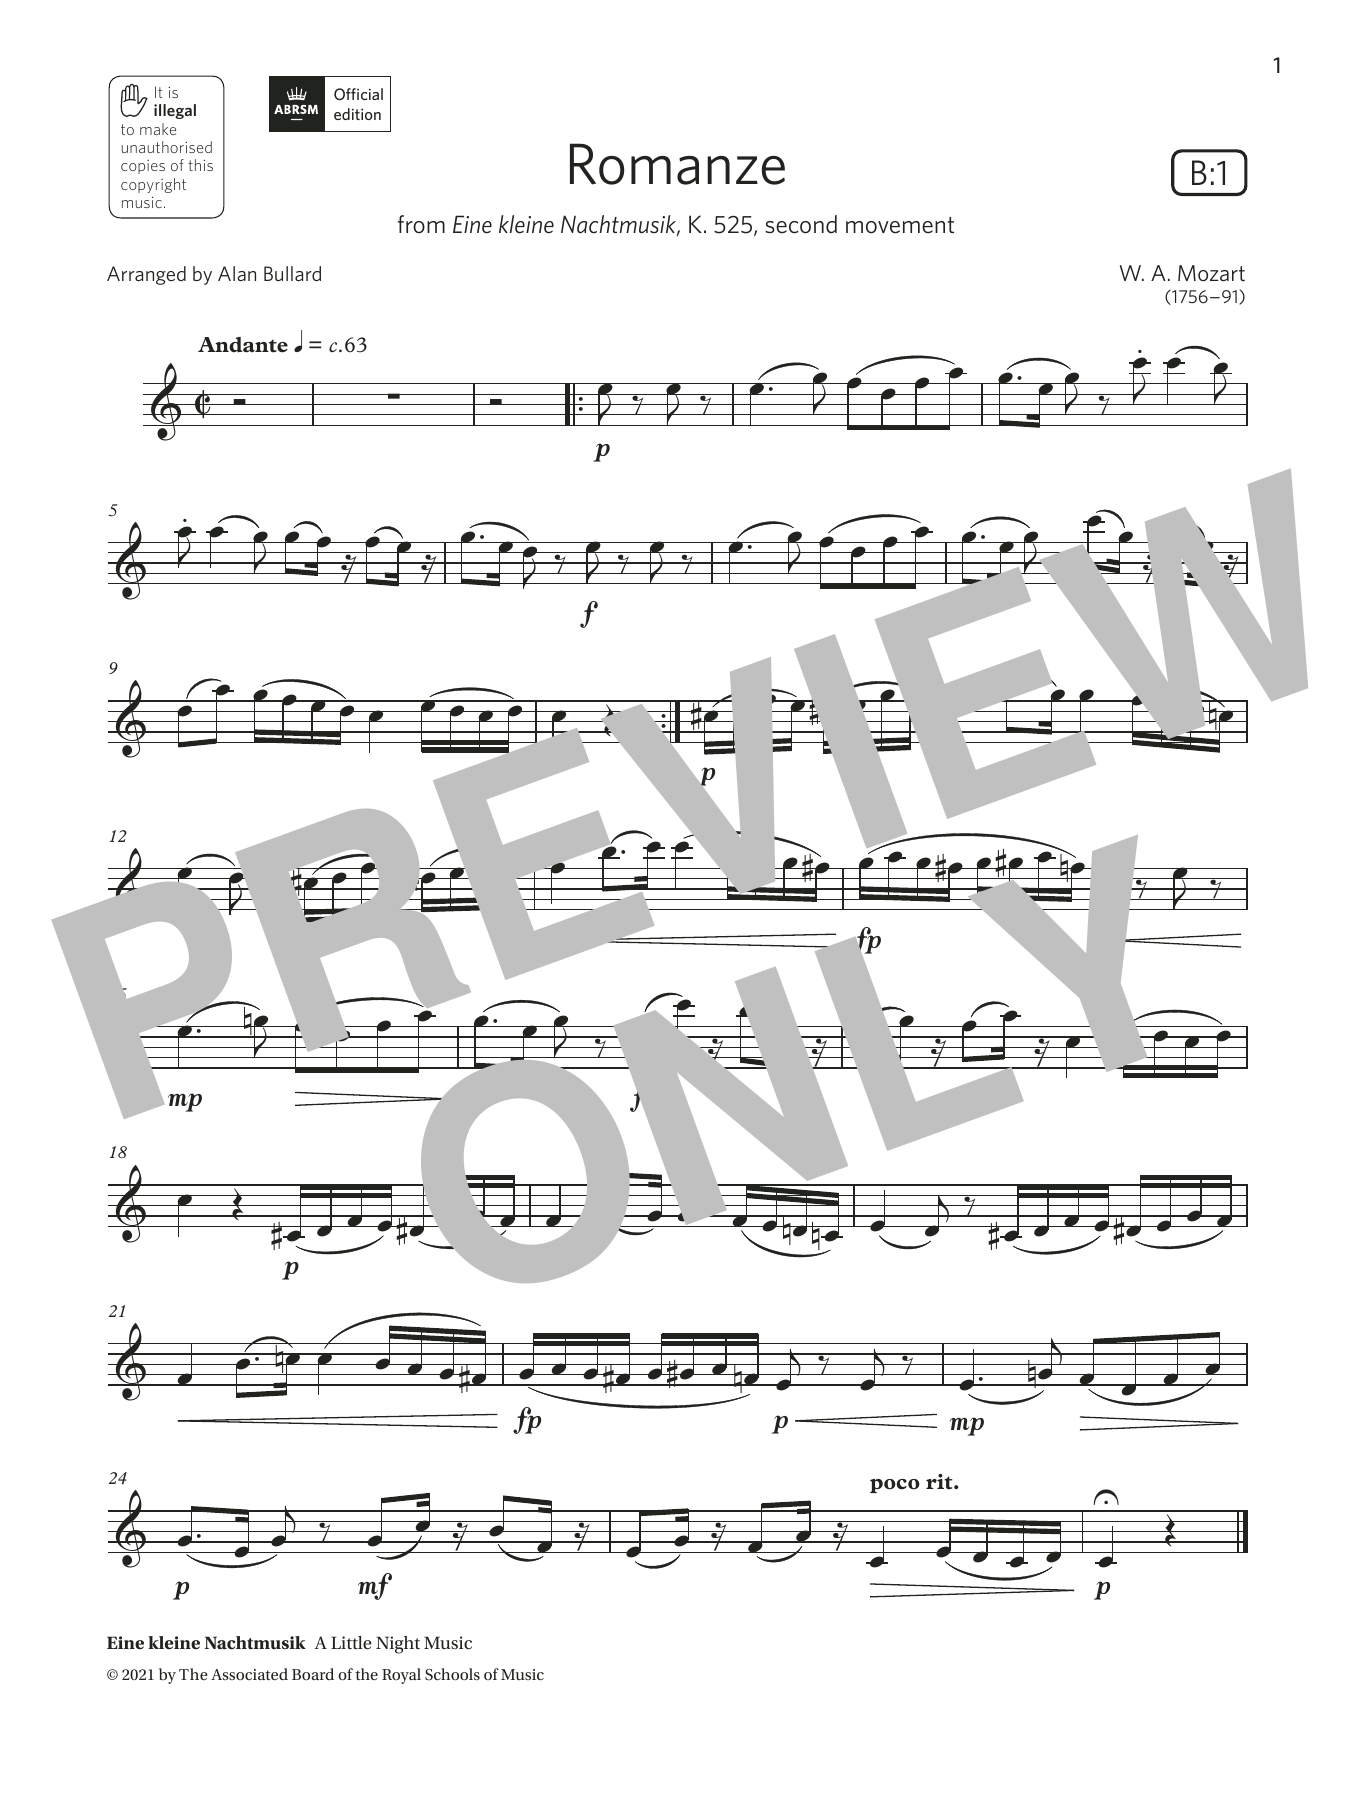 Download Wolfgang Amadeus Mozart Romanze (from Eine kleine Nachtmusik) Sheet Music